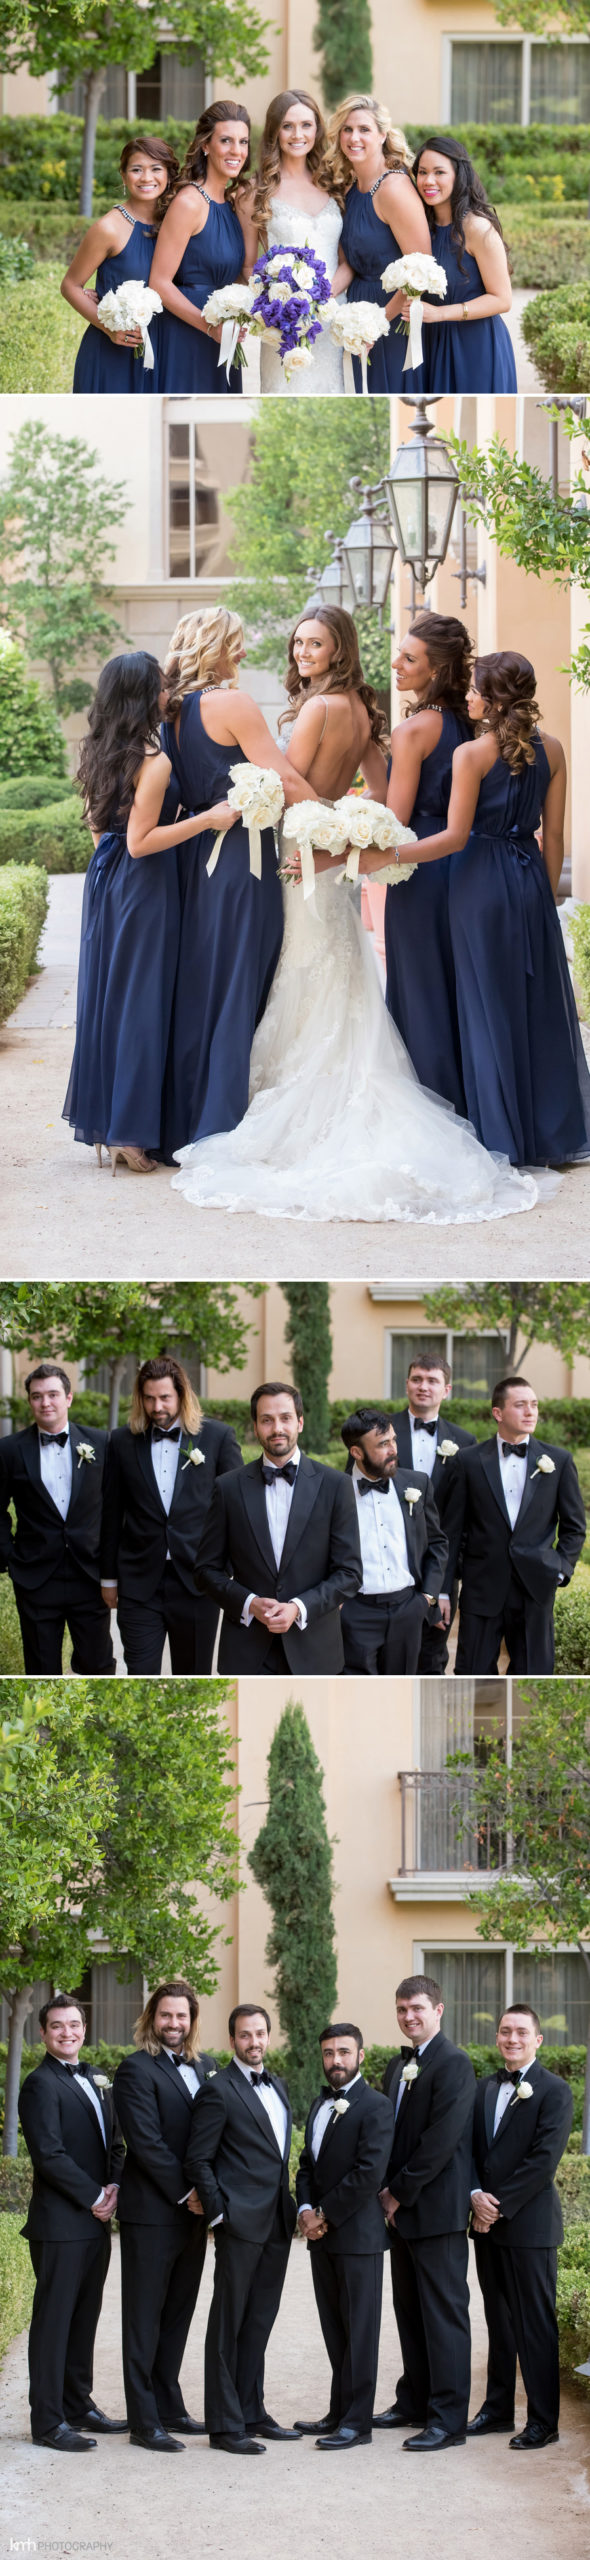 Glamorous Black Tie Wedding at Hilton Lake Las Vegas Resort | KMH Photography